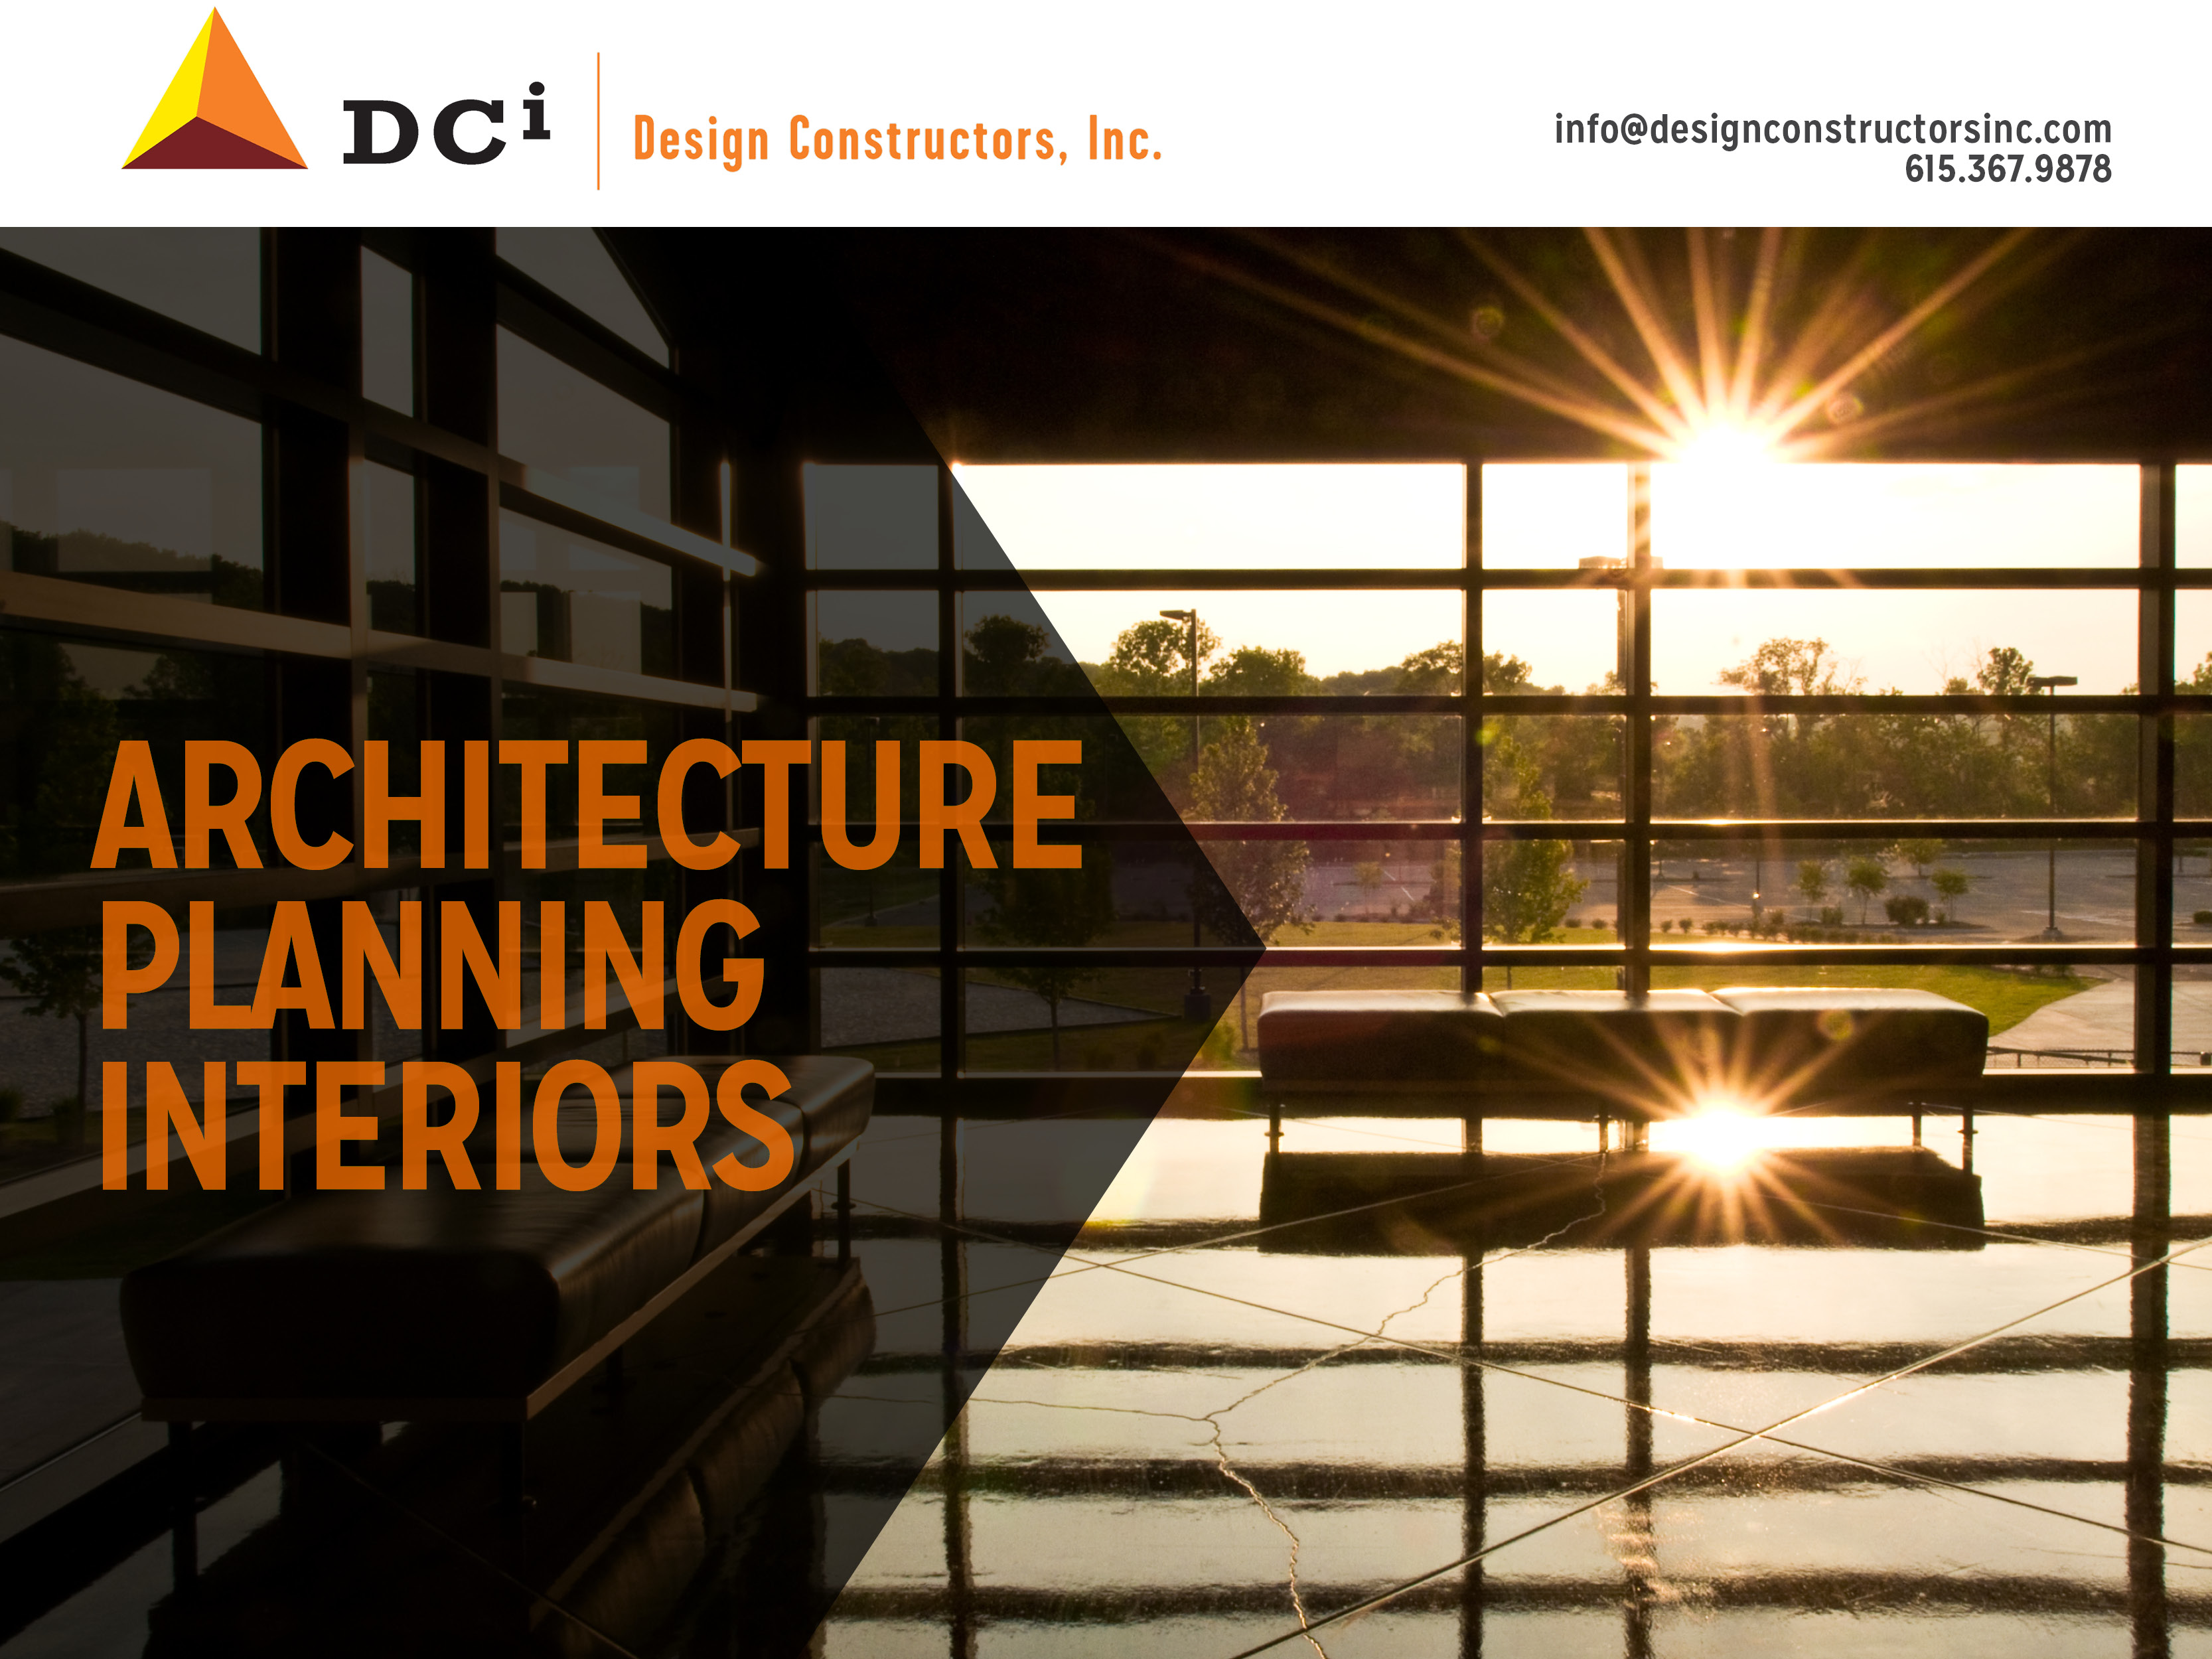 Design Constructors, Inc.